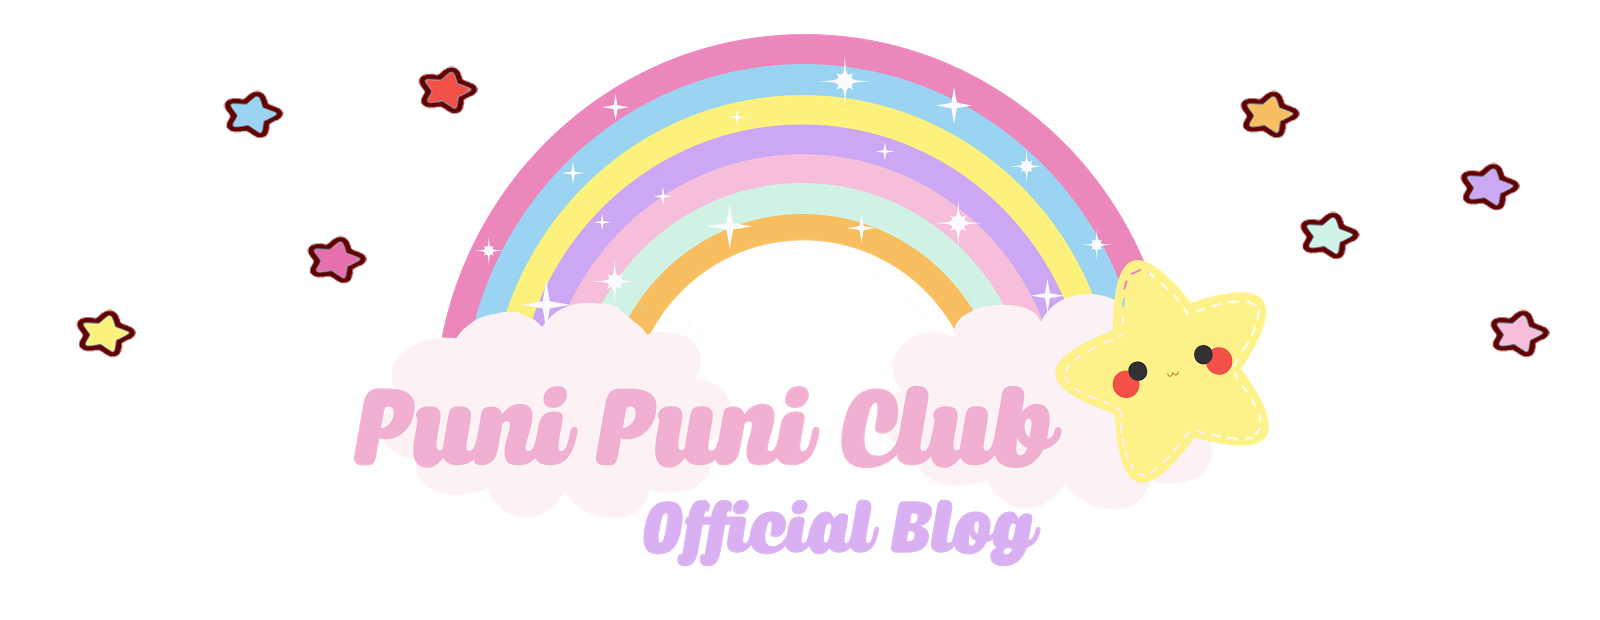 Puni Puni Club Blog